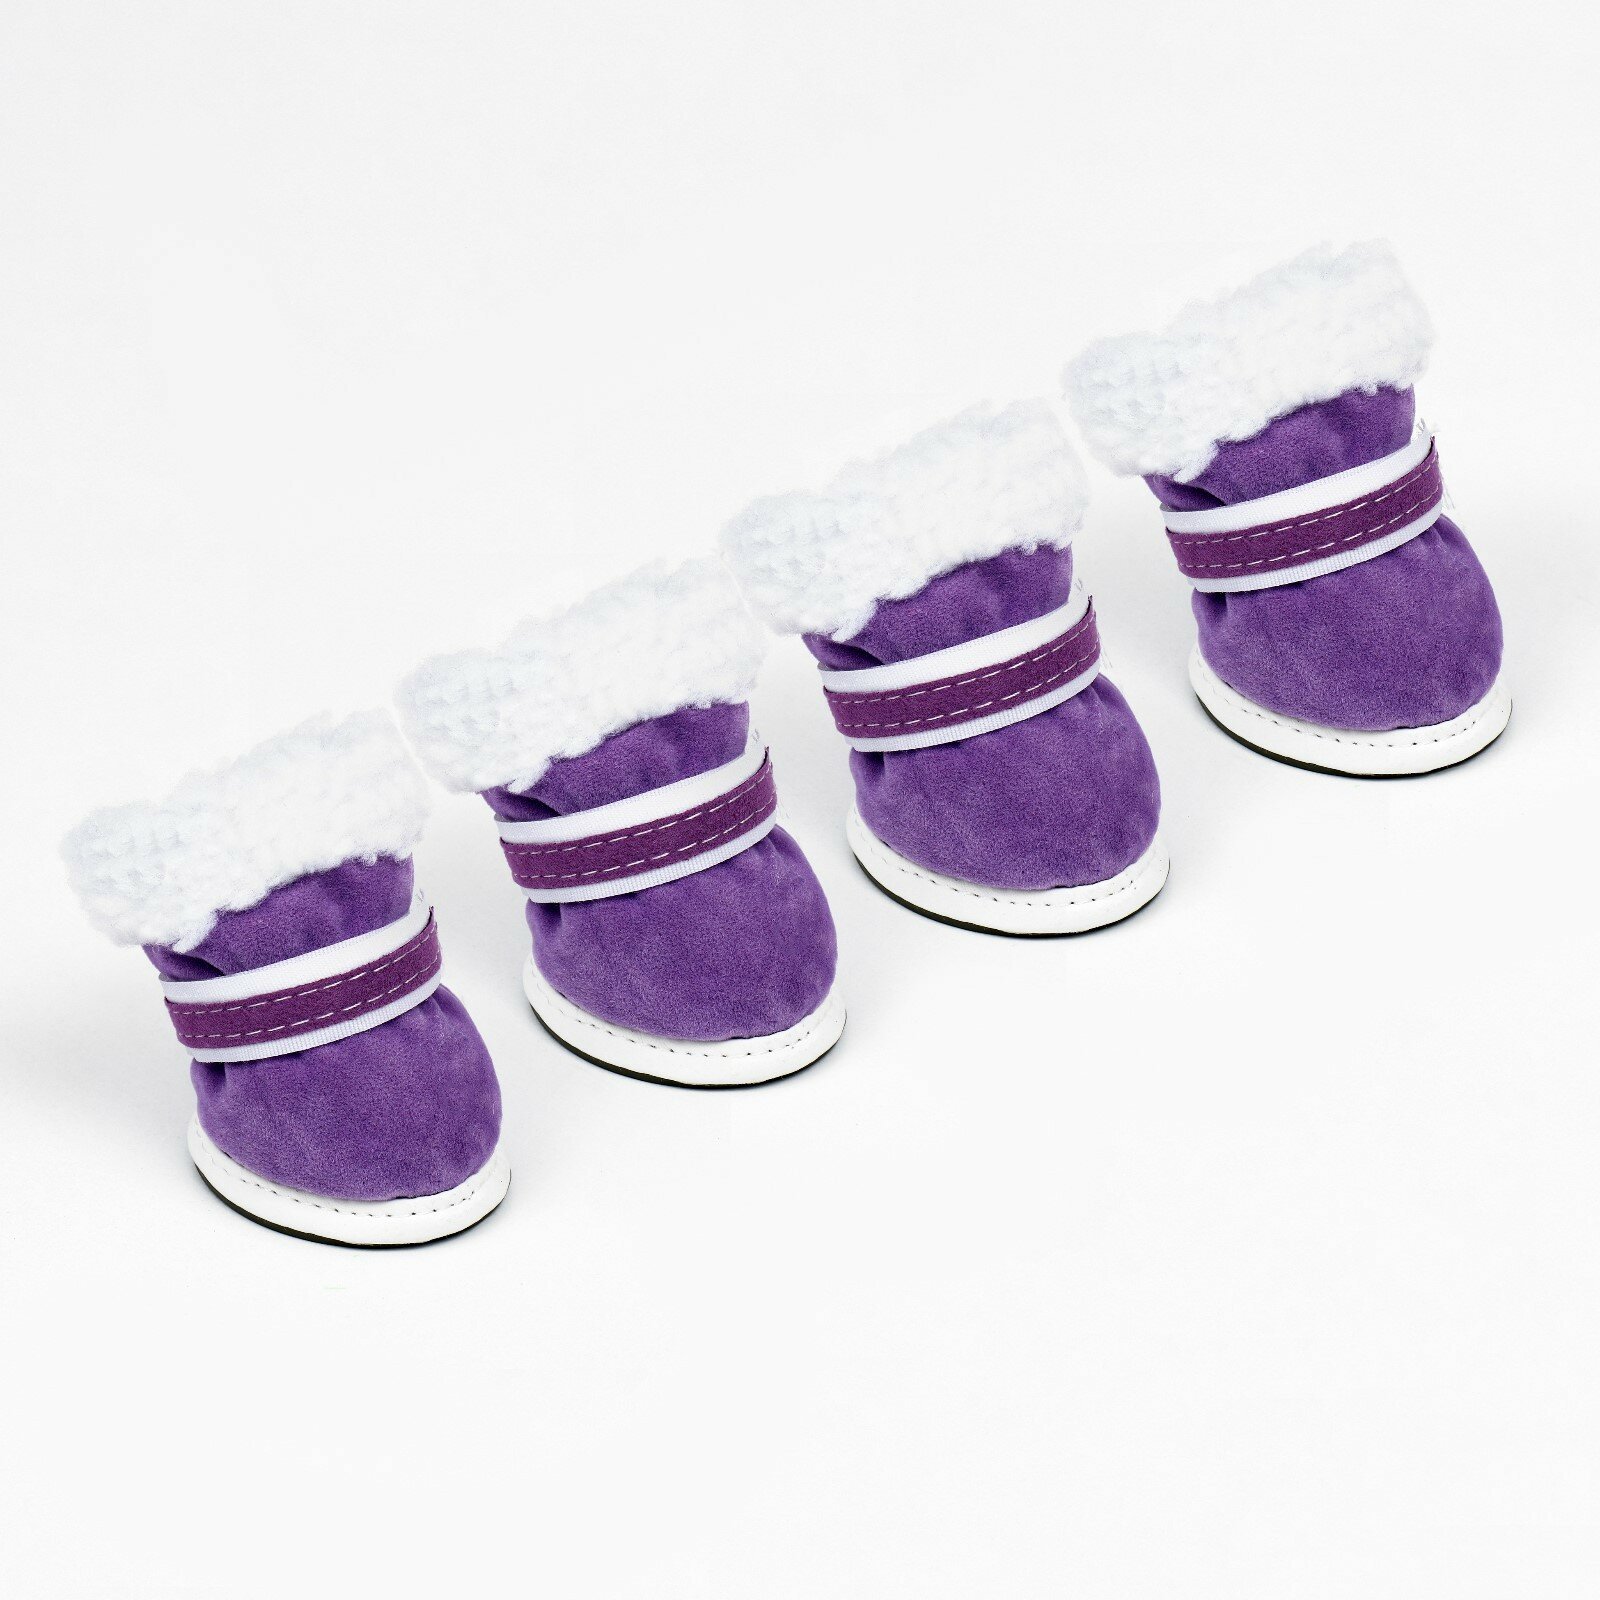 Ботинки "На прогулку", набор 4 шт, 5 размер (6*5), фиолетовые